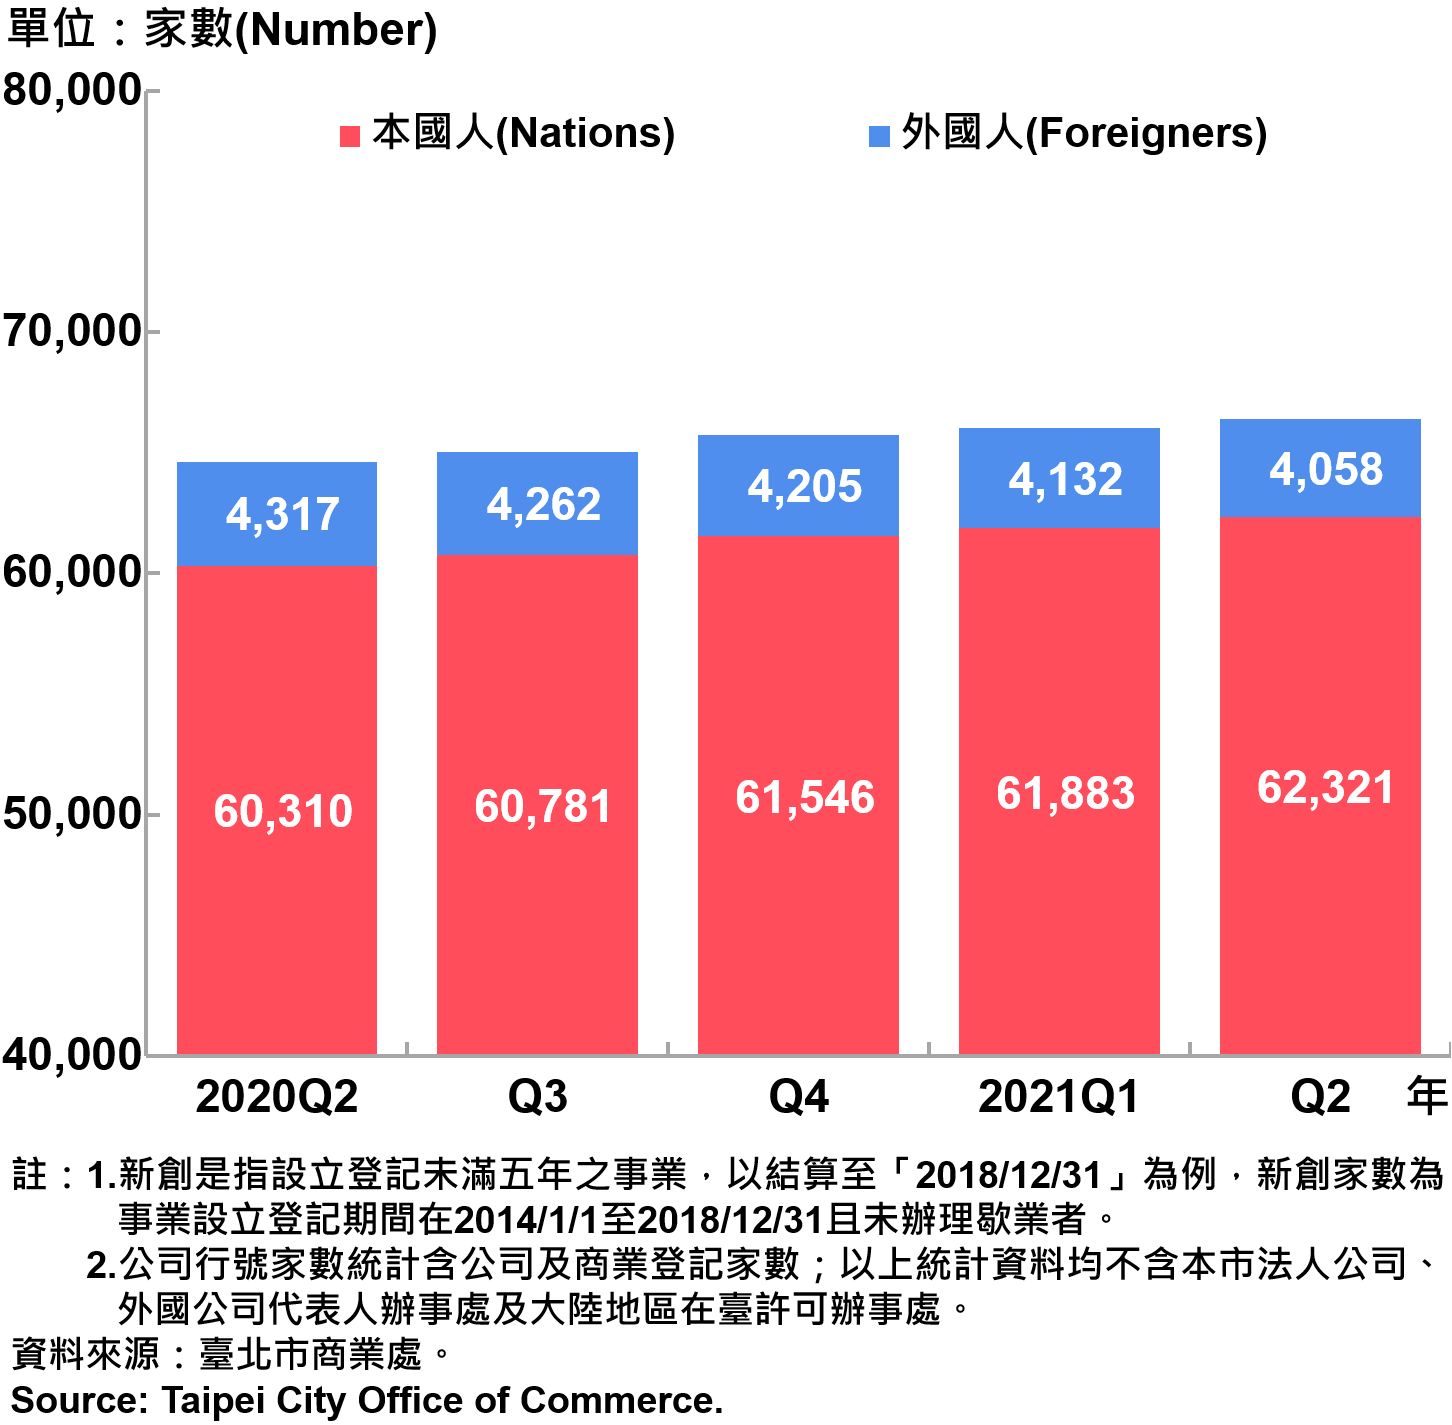 臺北市新創公司行號負責人-本國人與外國人分布情形-現存家數—2021 Q2 Responsible Person of Newly Registered Companies In Taipei City by Nationality - Number of Current—2021Q2